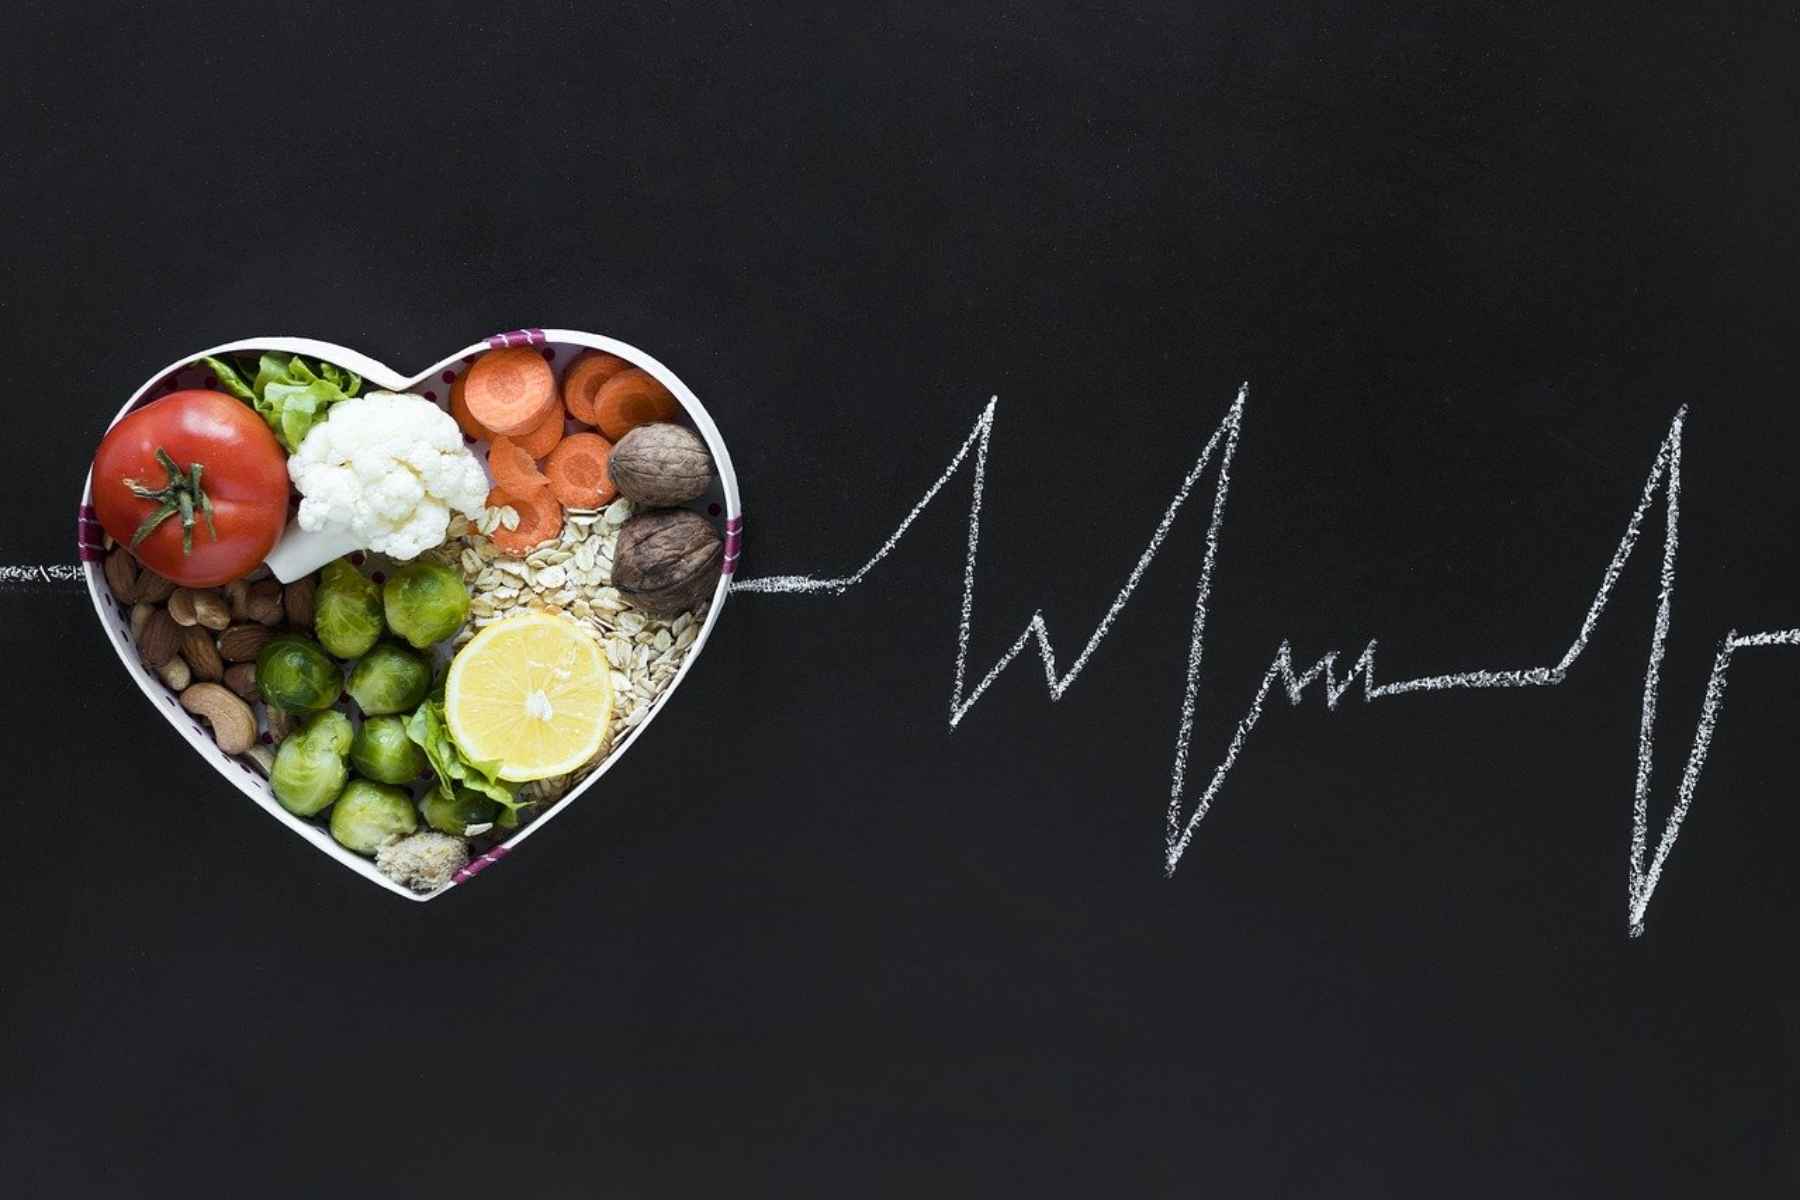 Καρδιά: Φάτε νωρίτερα τα γεύματά σας για να την θωρακίσετε